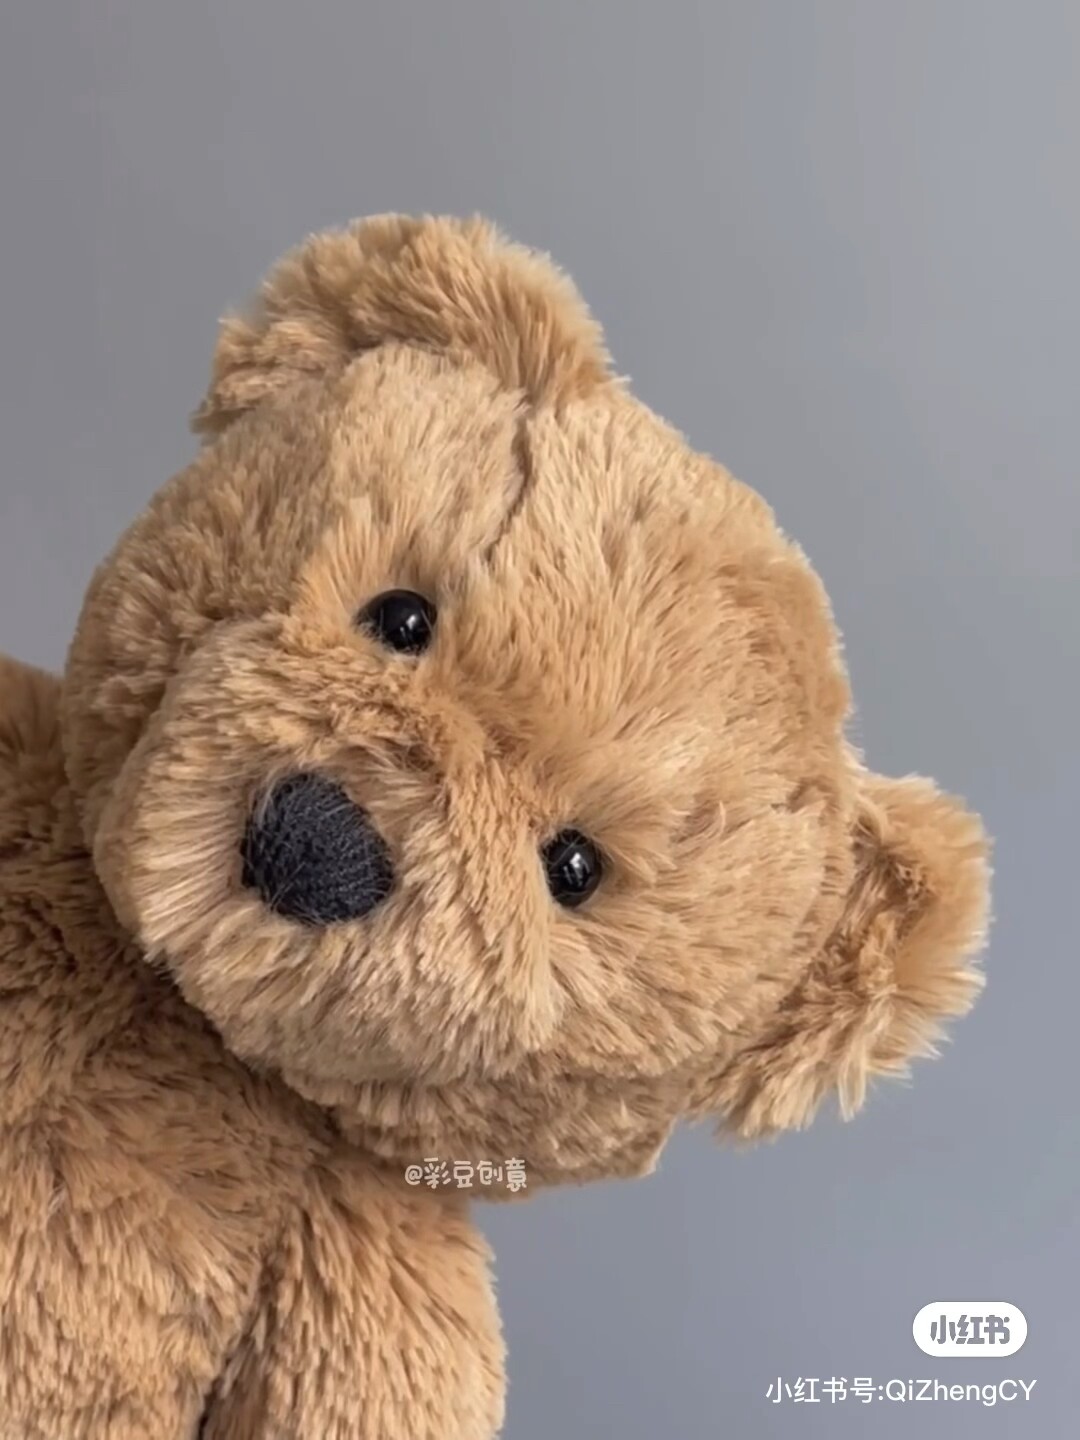 the teddy bear company, the teddy bear factory, wholesale plush teddy bears, wholesale teddy bear suppliers, teddy bear wholesale